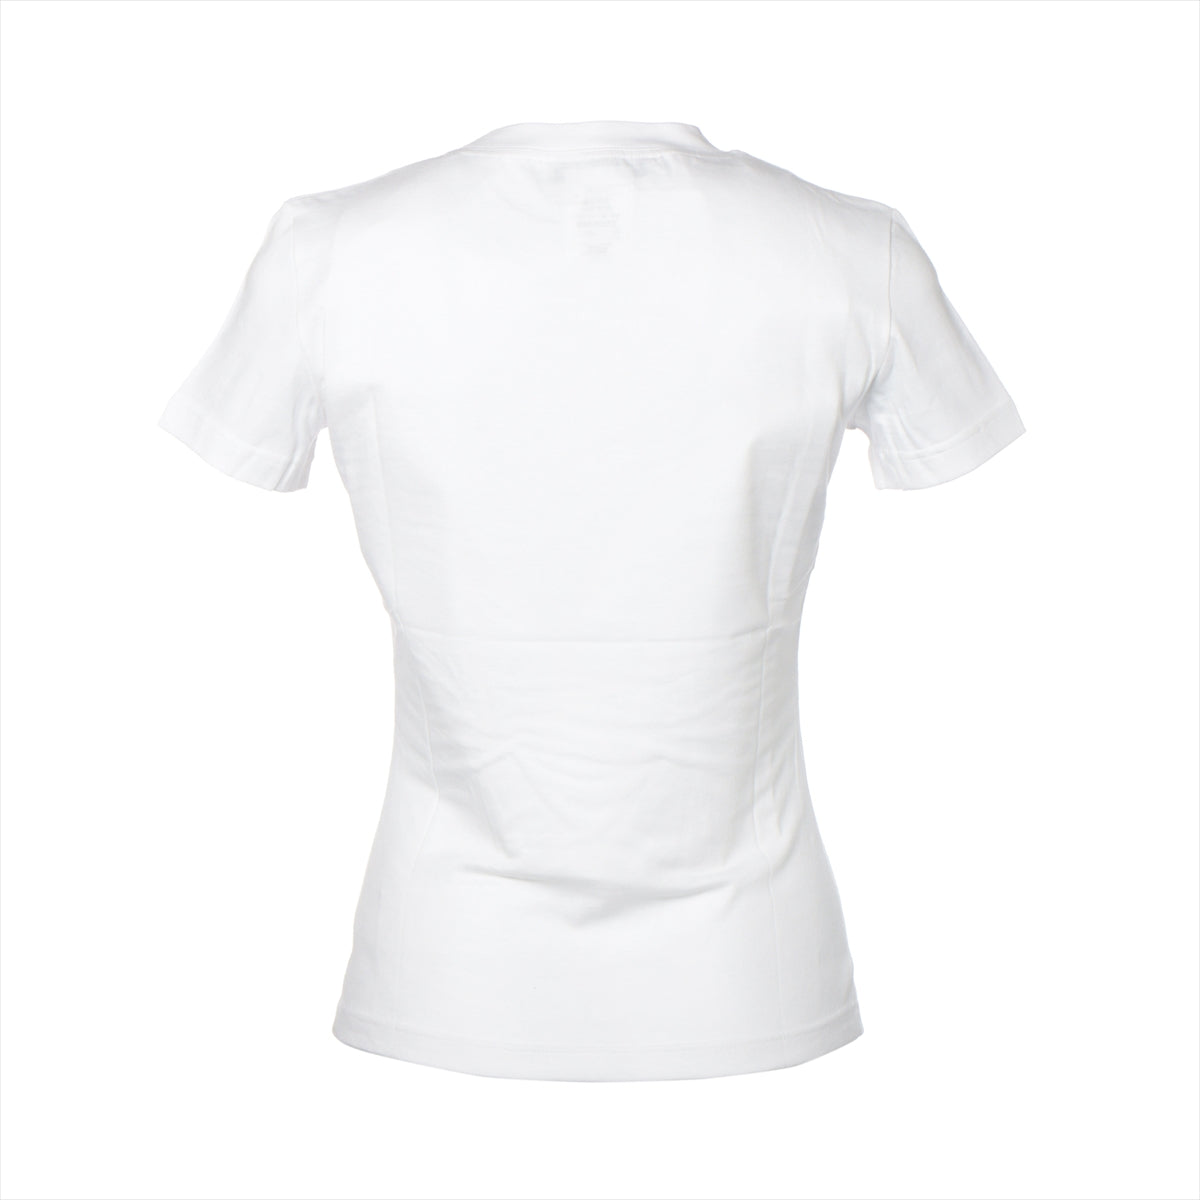 クリスチャンディオール 02年 コットン Tシャツ F38 レディース ホワイト  J'ADORE 2A12155028 付属品付き